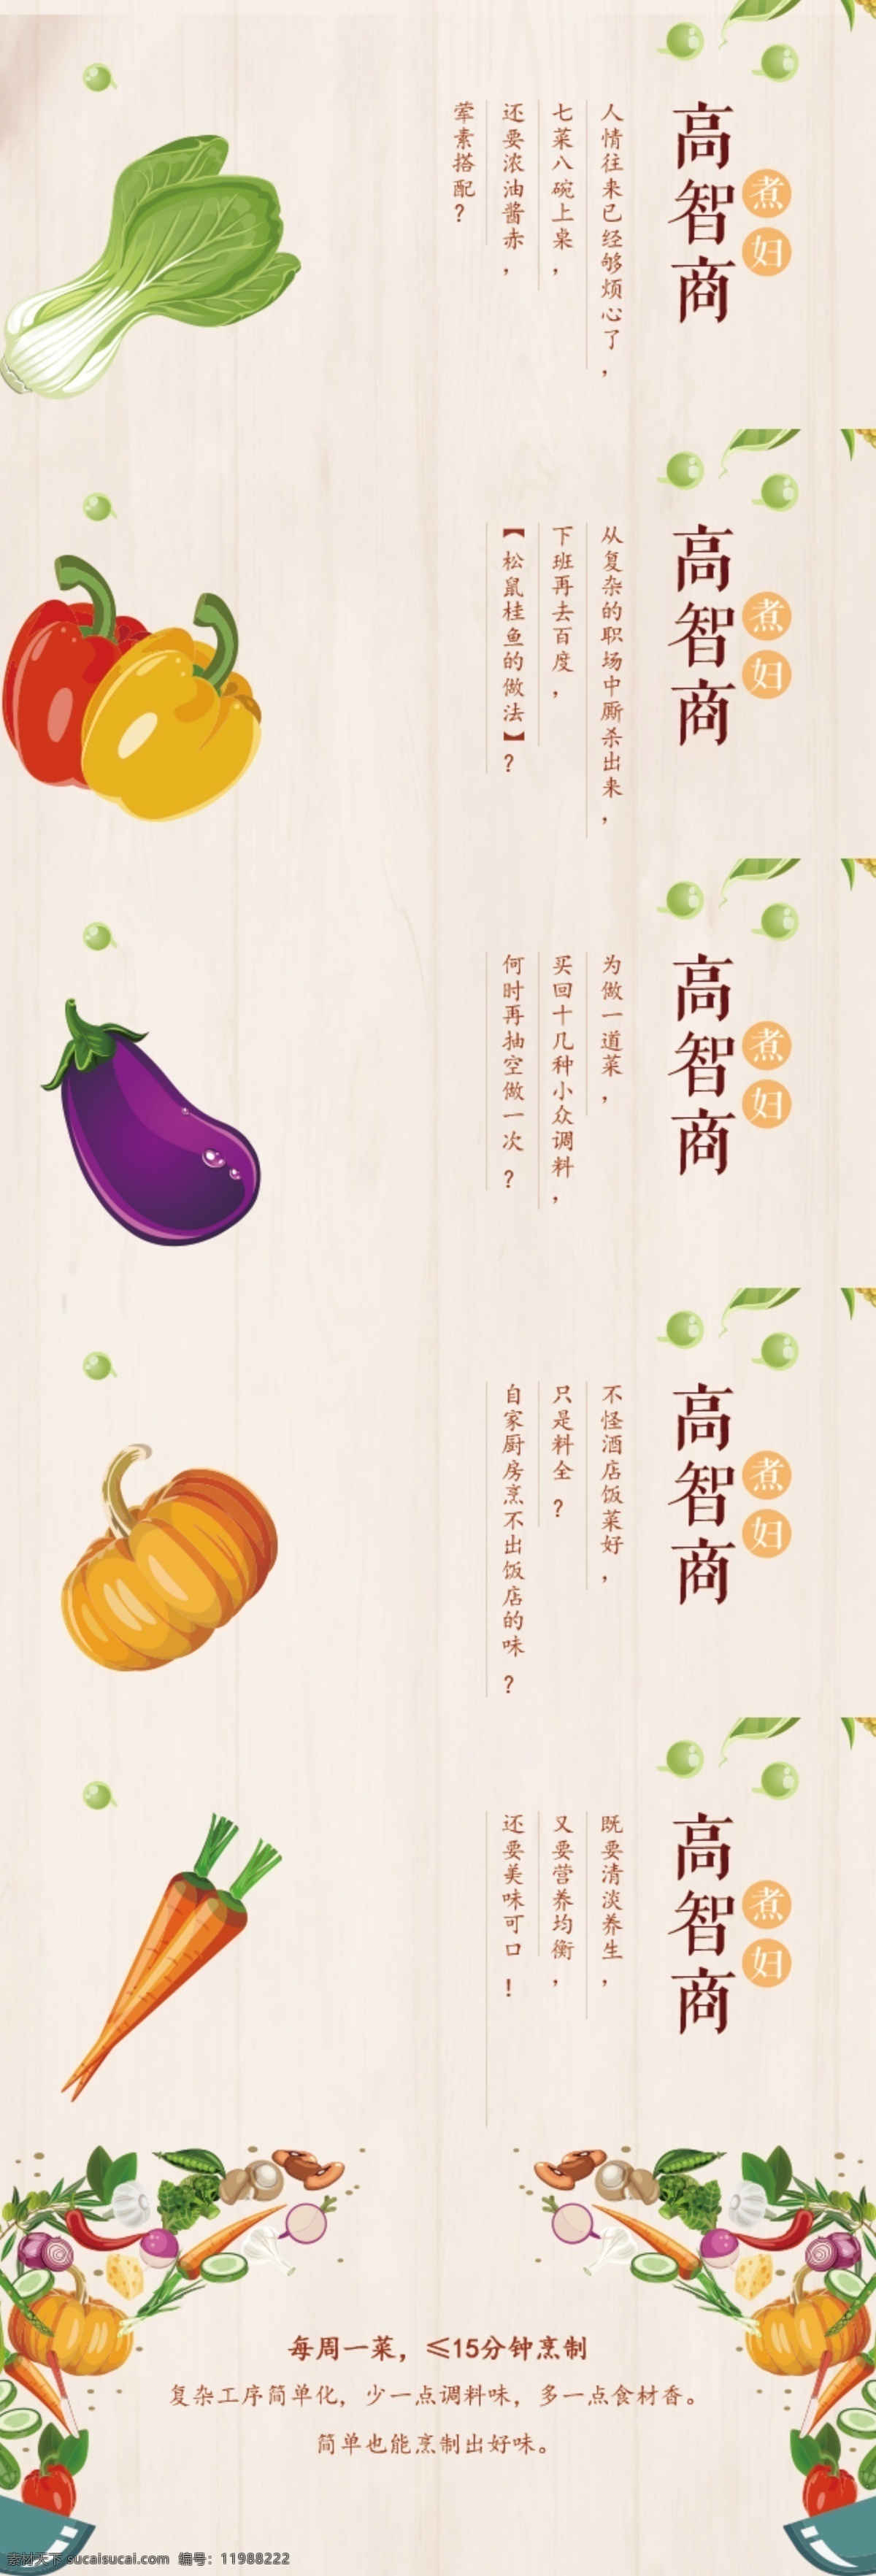 水果 蔬菜 烹饪 食 材 海报 淘宝 天猫 京东 电商 食材